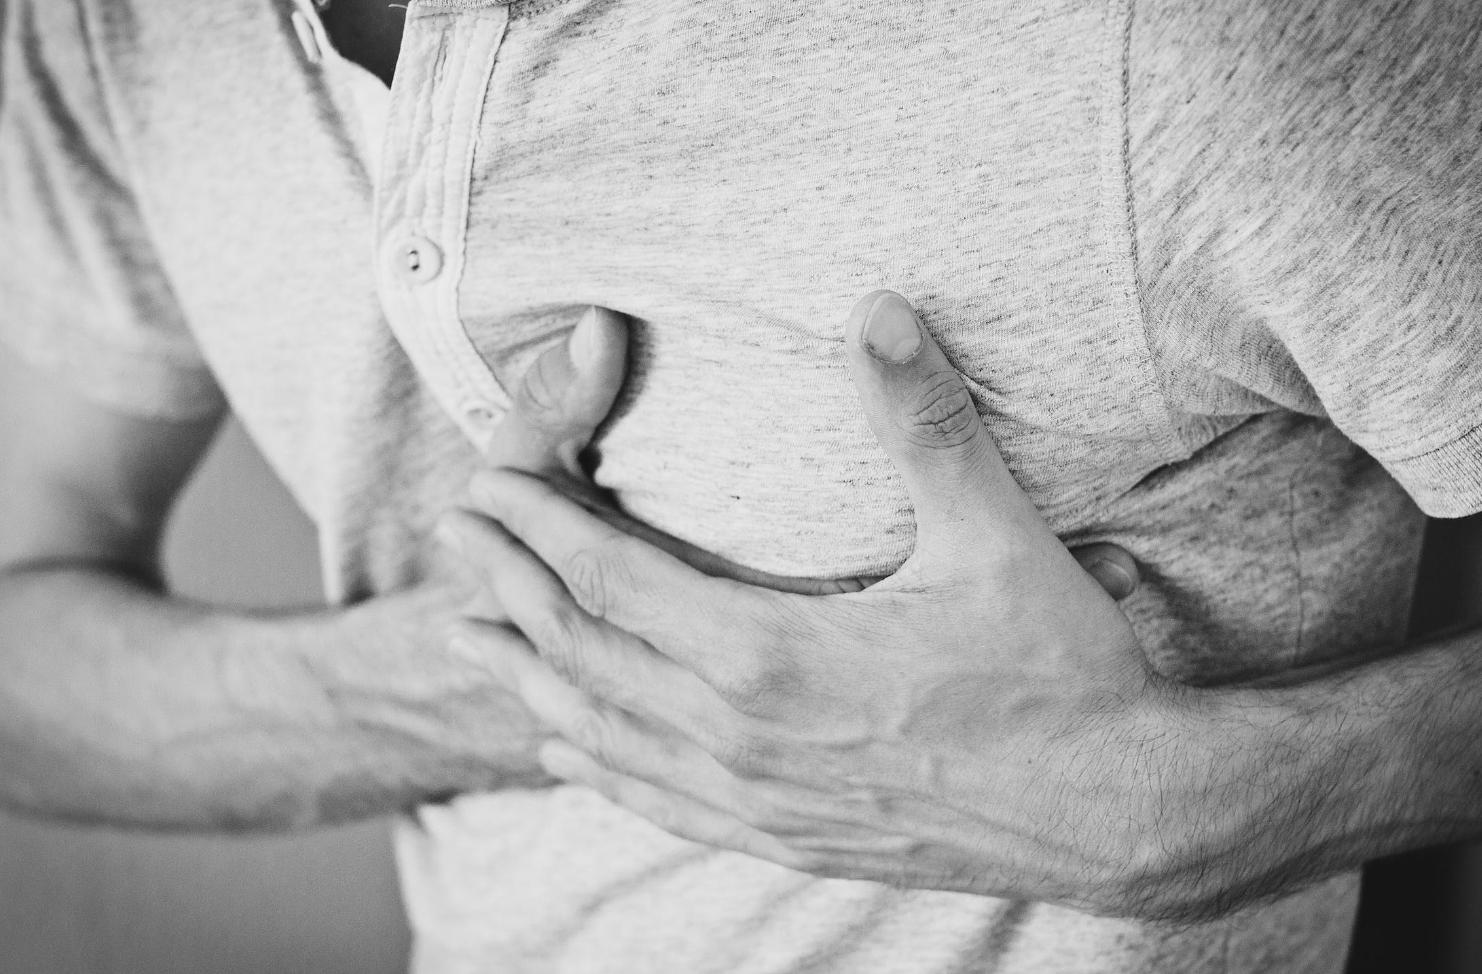 身體從沒不舒服   熟男健檢驚見「8公分大腫瘤在心臟內甩動」